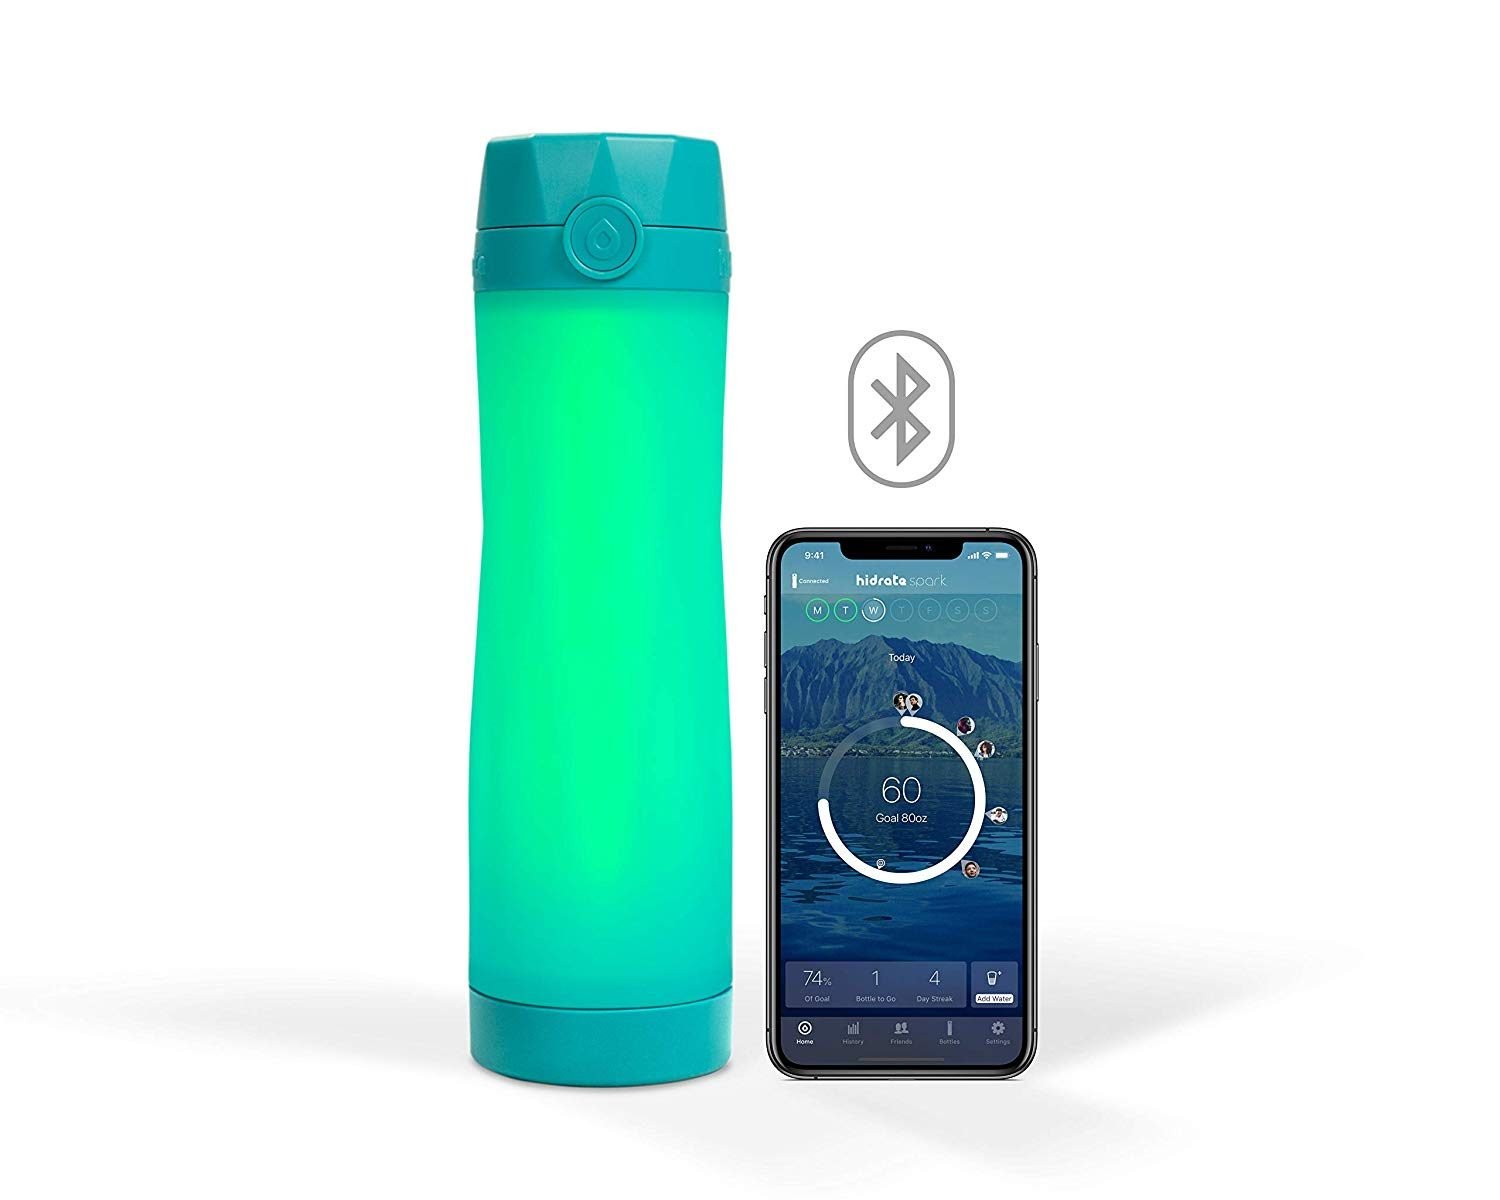 Smart Water Bottle - HidrateSpark Bluetooth Water Bottle + Tracker App